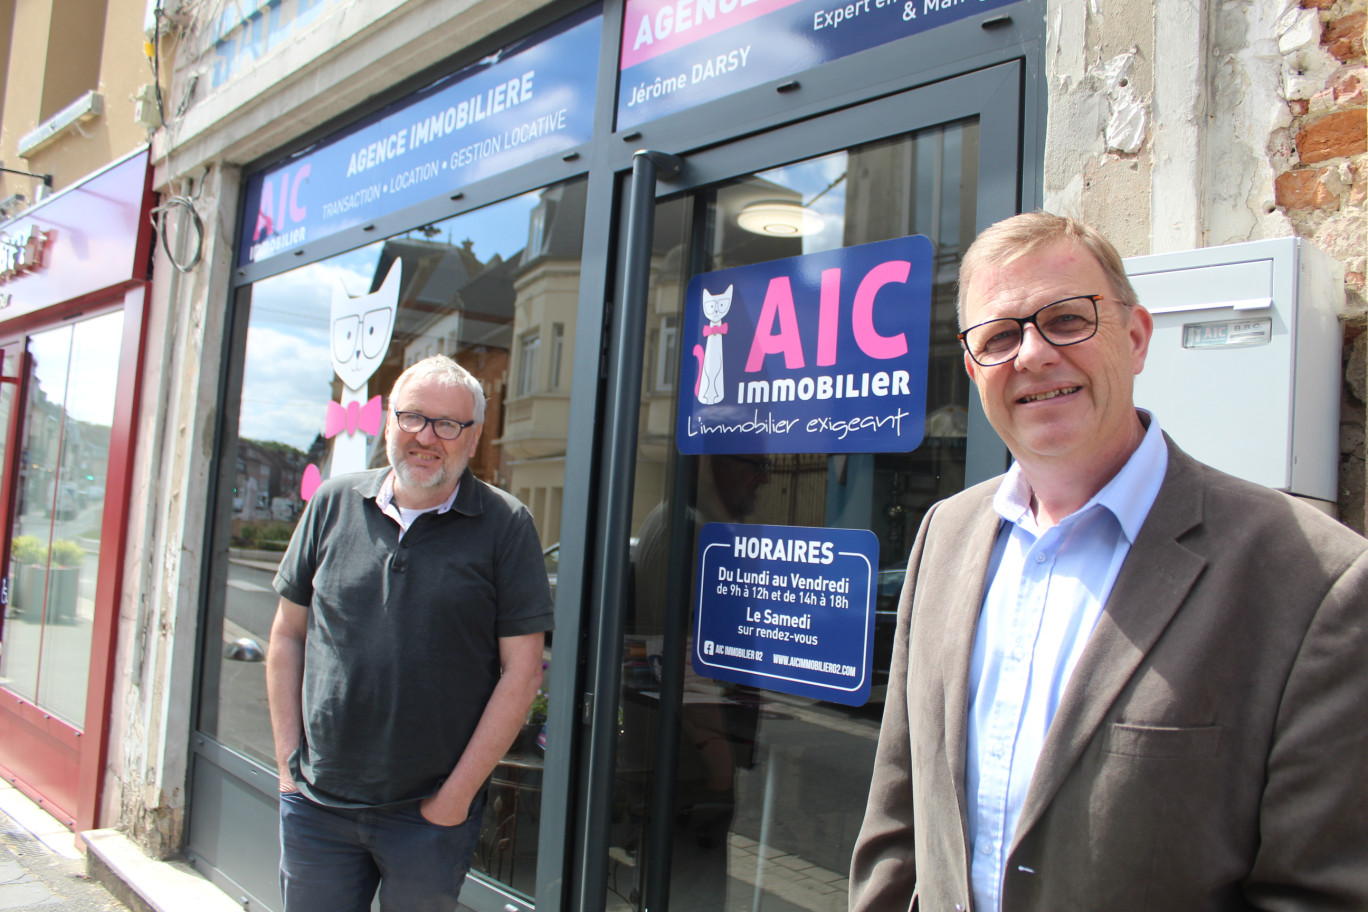 Philippe Keusser, responsable de gestion locative et Jérôme Darsy, manager, devant leur agence AIC Immobilier à La Fère.